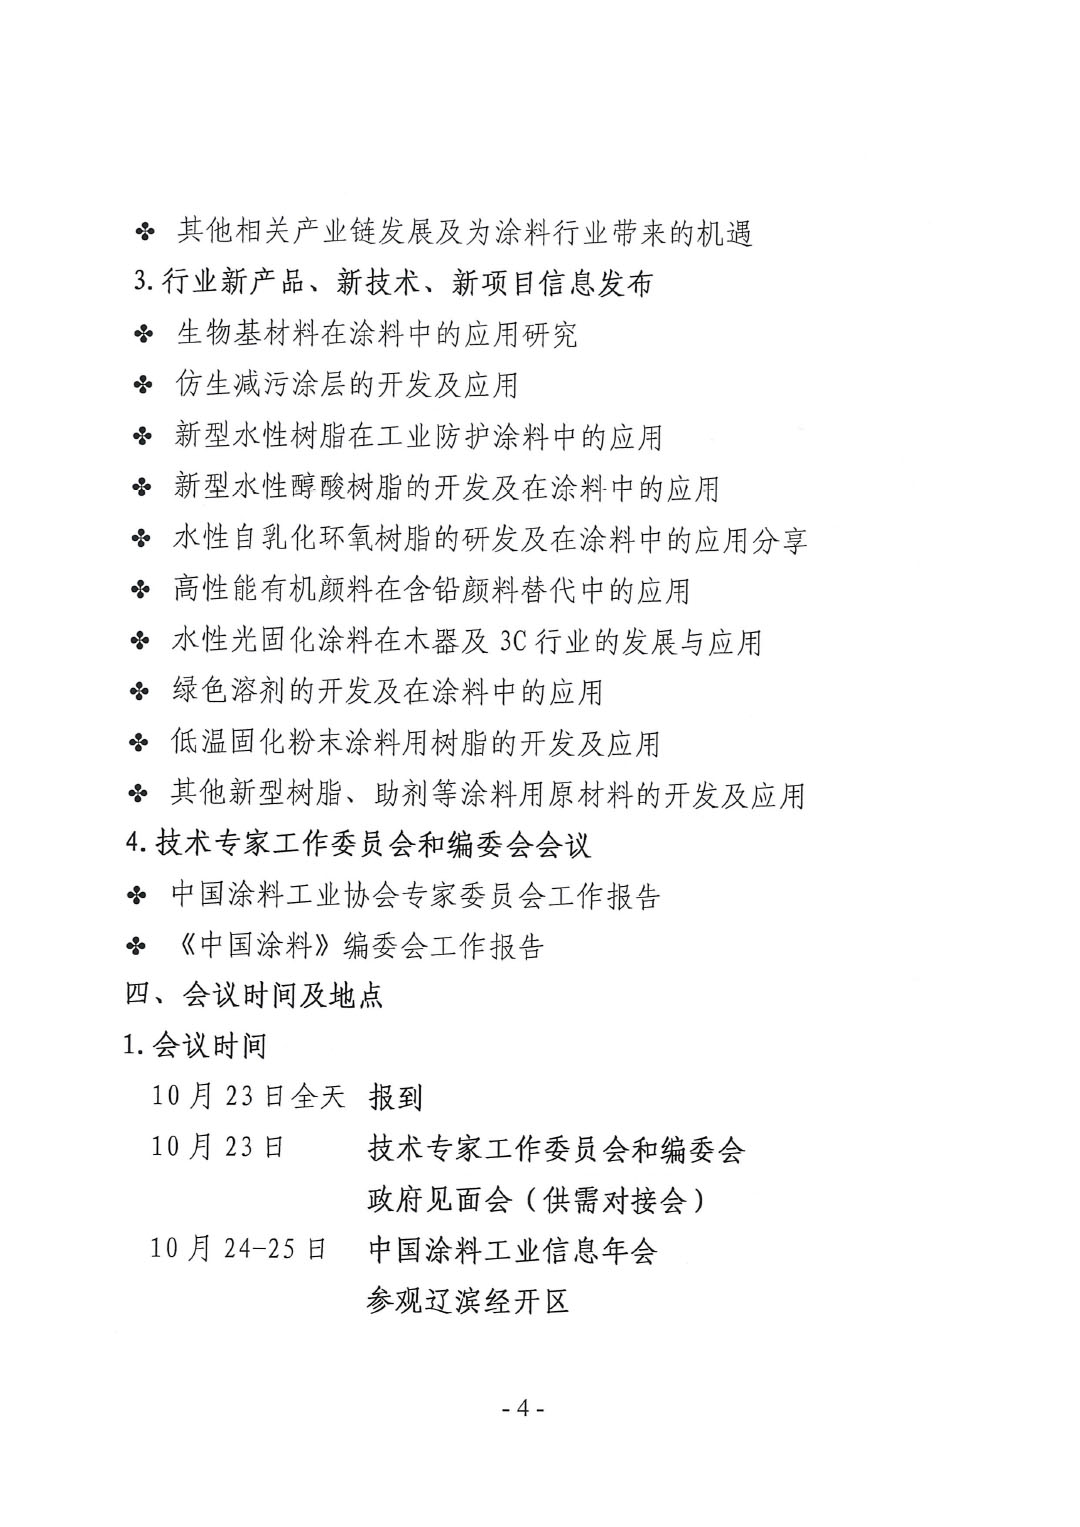 2023年中国涂料工业信息年会通知（发文版）0921-4